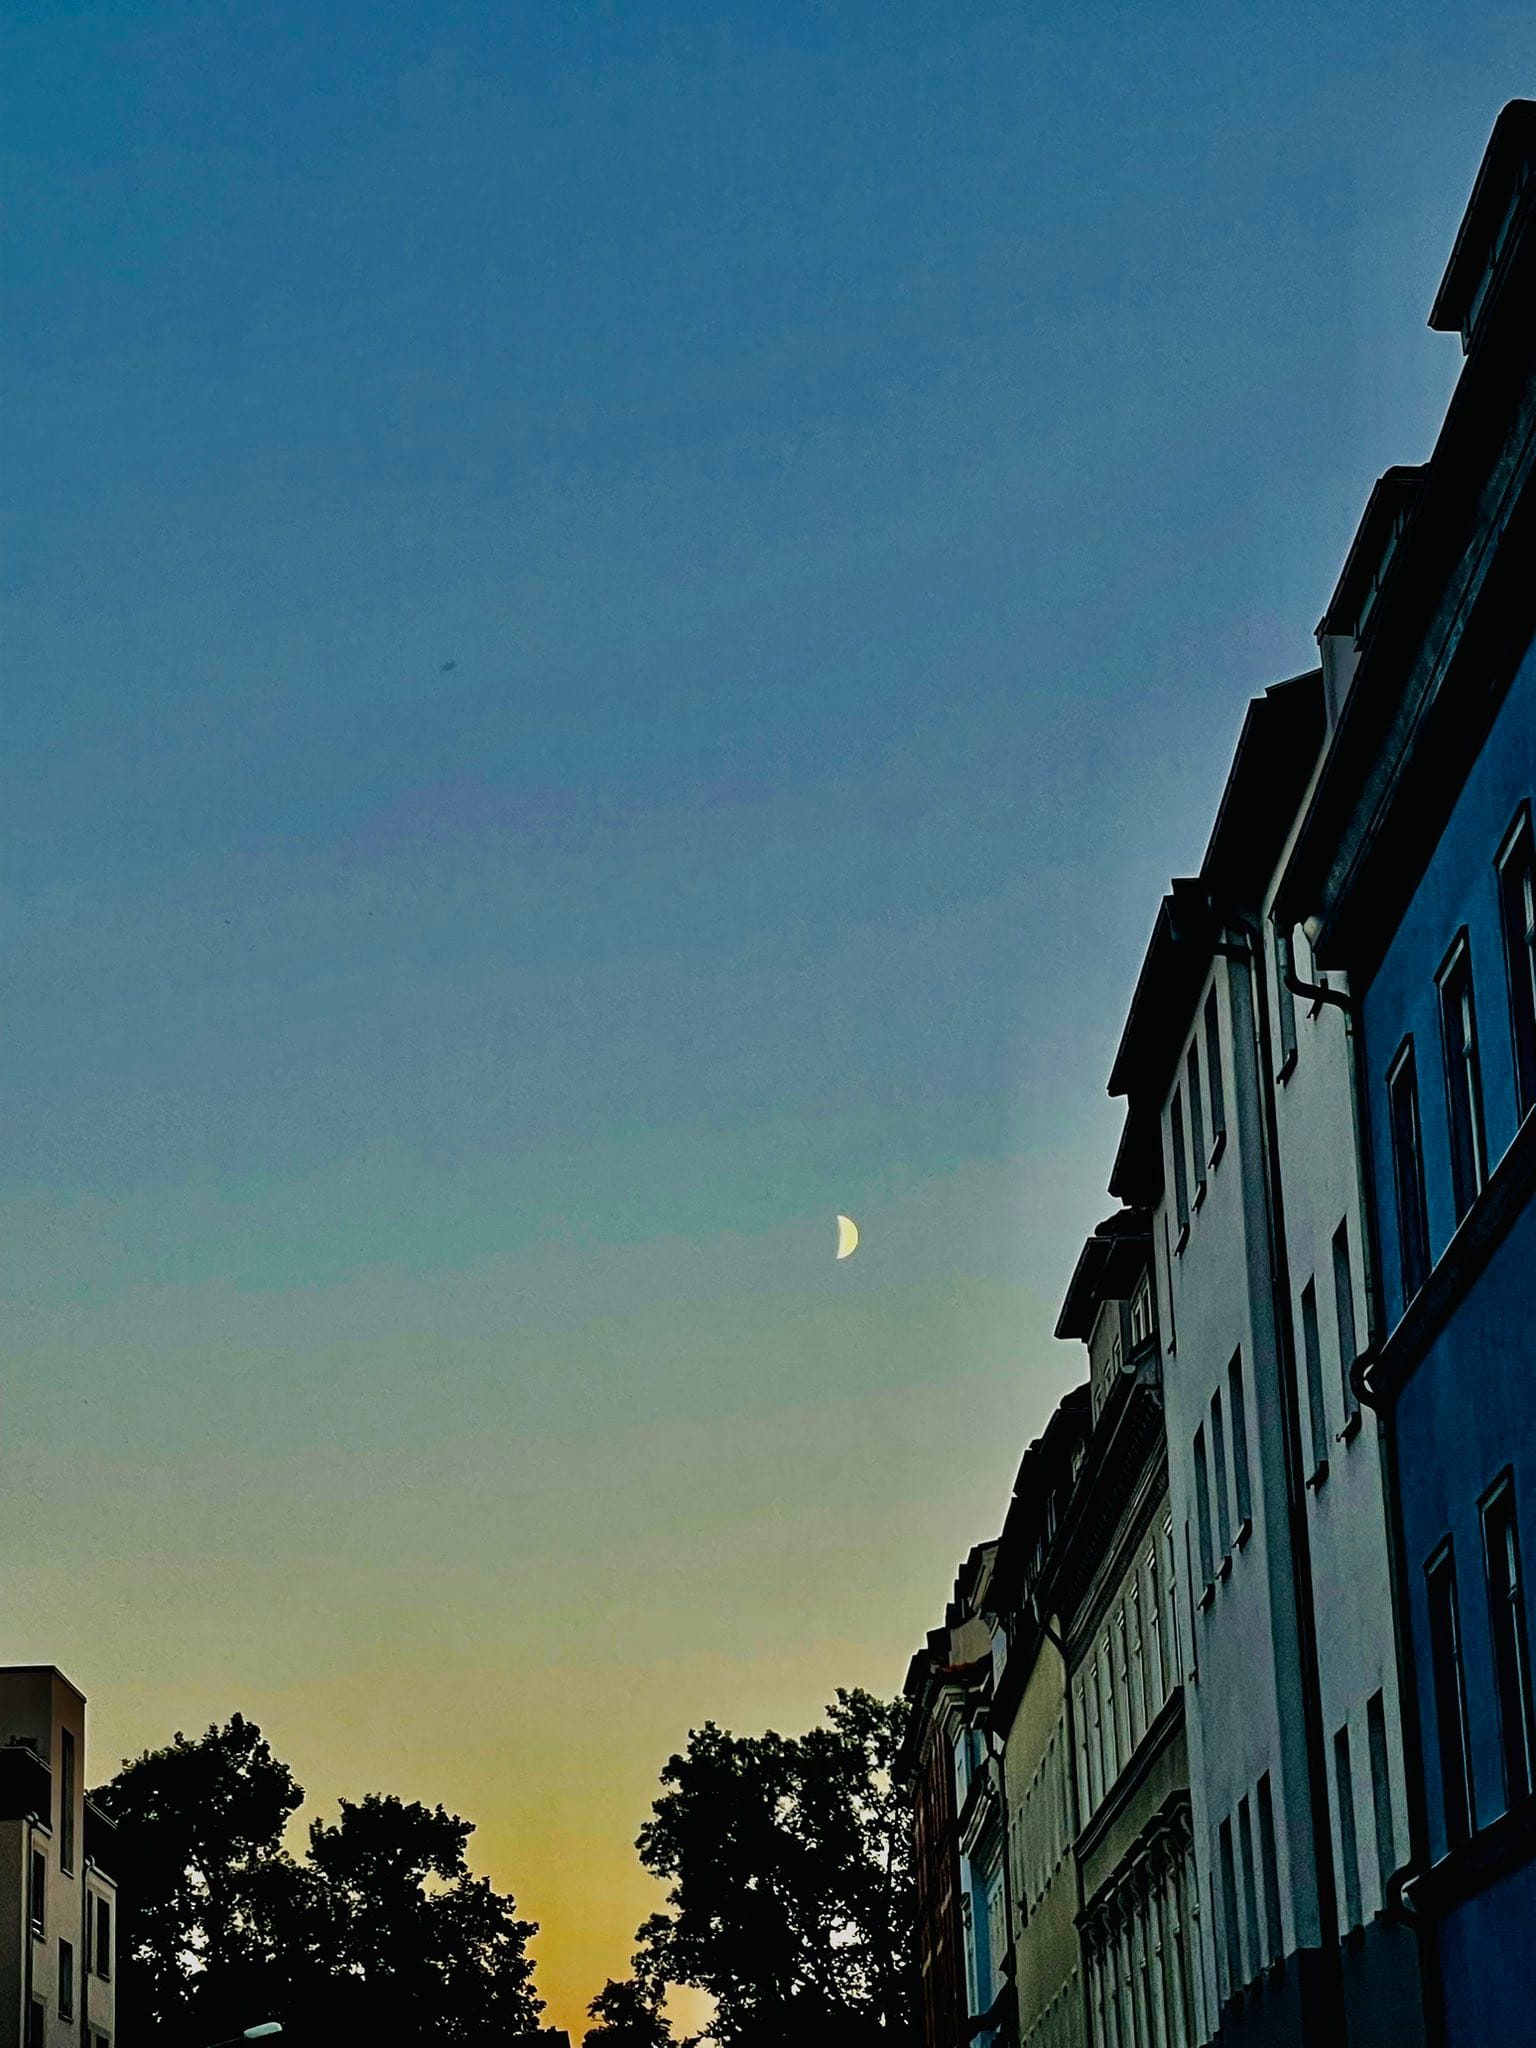 Der Mond als Sichel über der Stadt, rechts sieht man Hausfassaden aus der Gründerzeit. (C) Herr Montag.